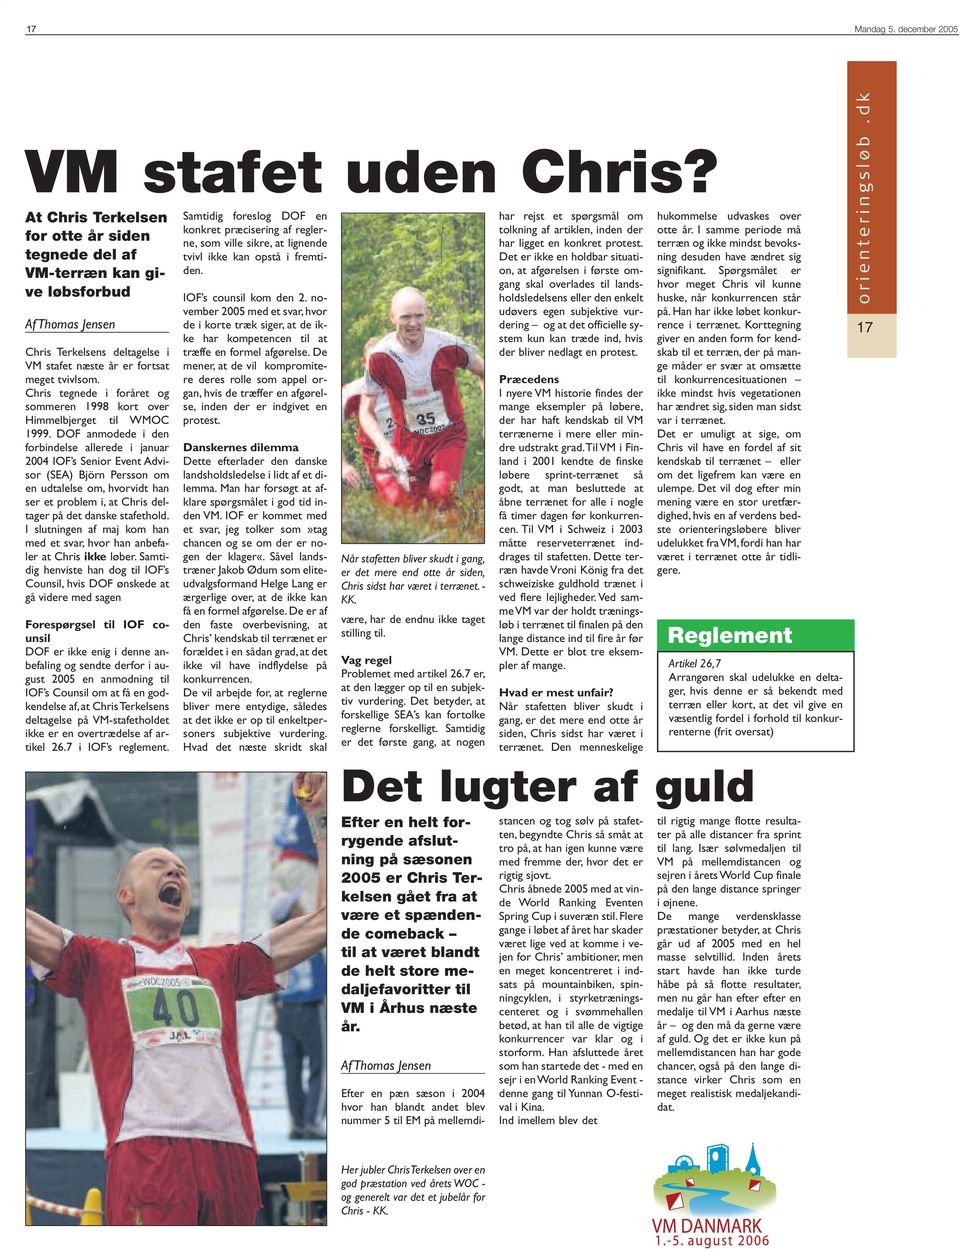 DOF anmodede i den forbindelse allerede i januar 2004 IOF s Senior Event Advisor (SEA) Björn Persson om en udtalelse om, hvorvidt han ser et problem i, at Chris deltager på det danske stafethold.